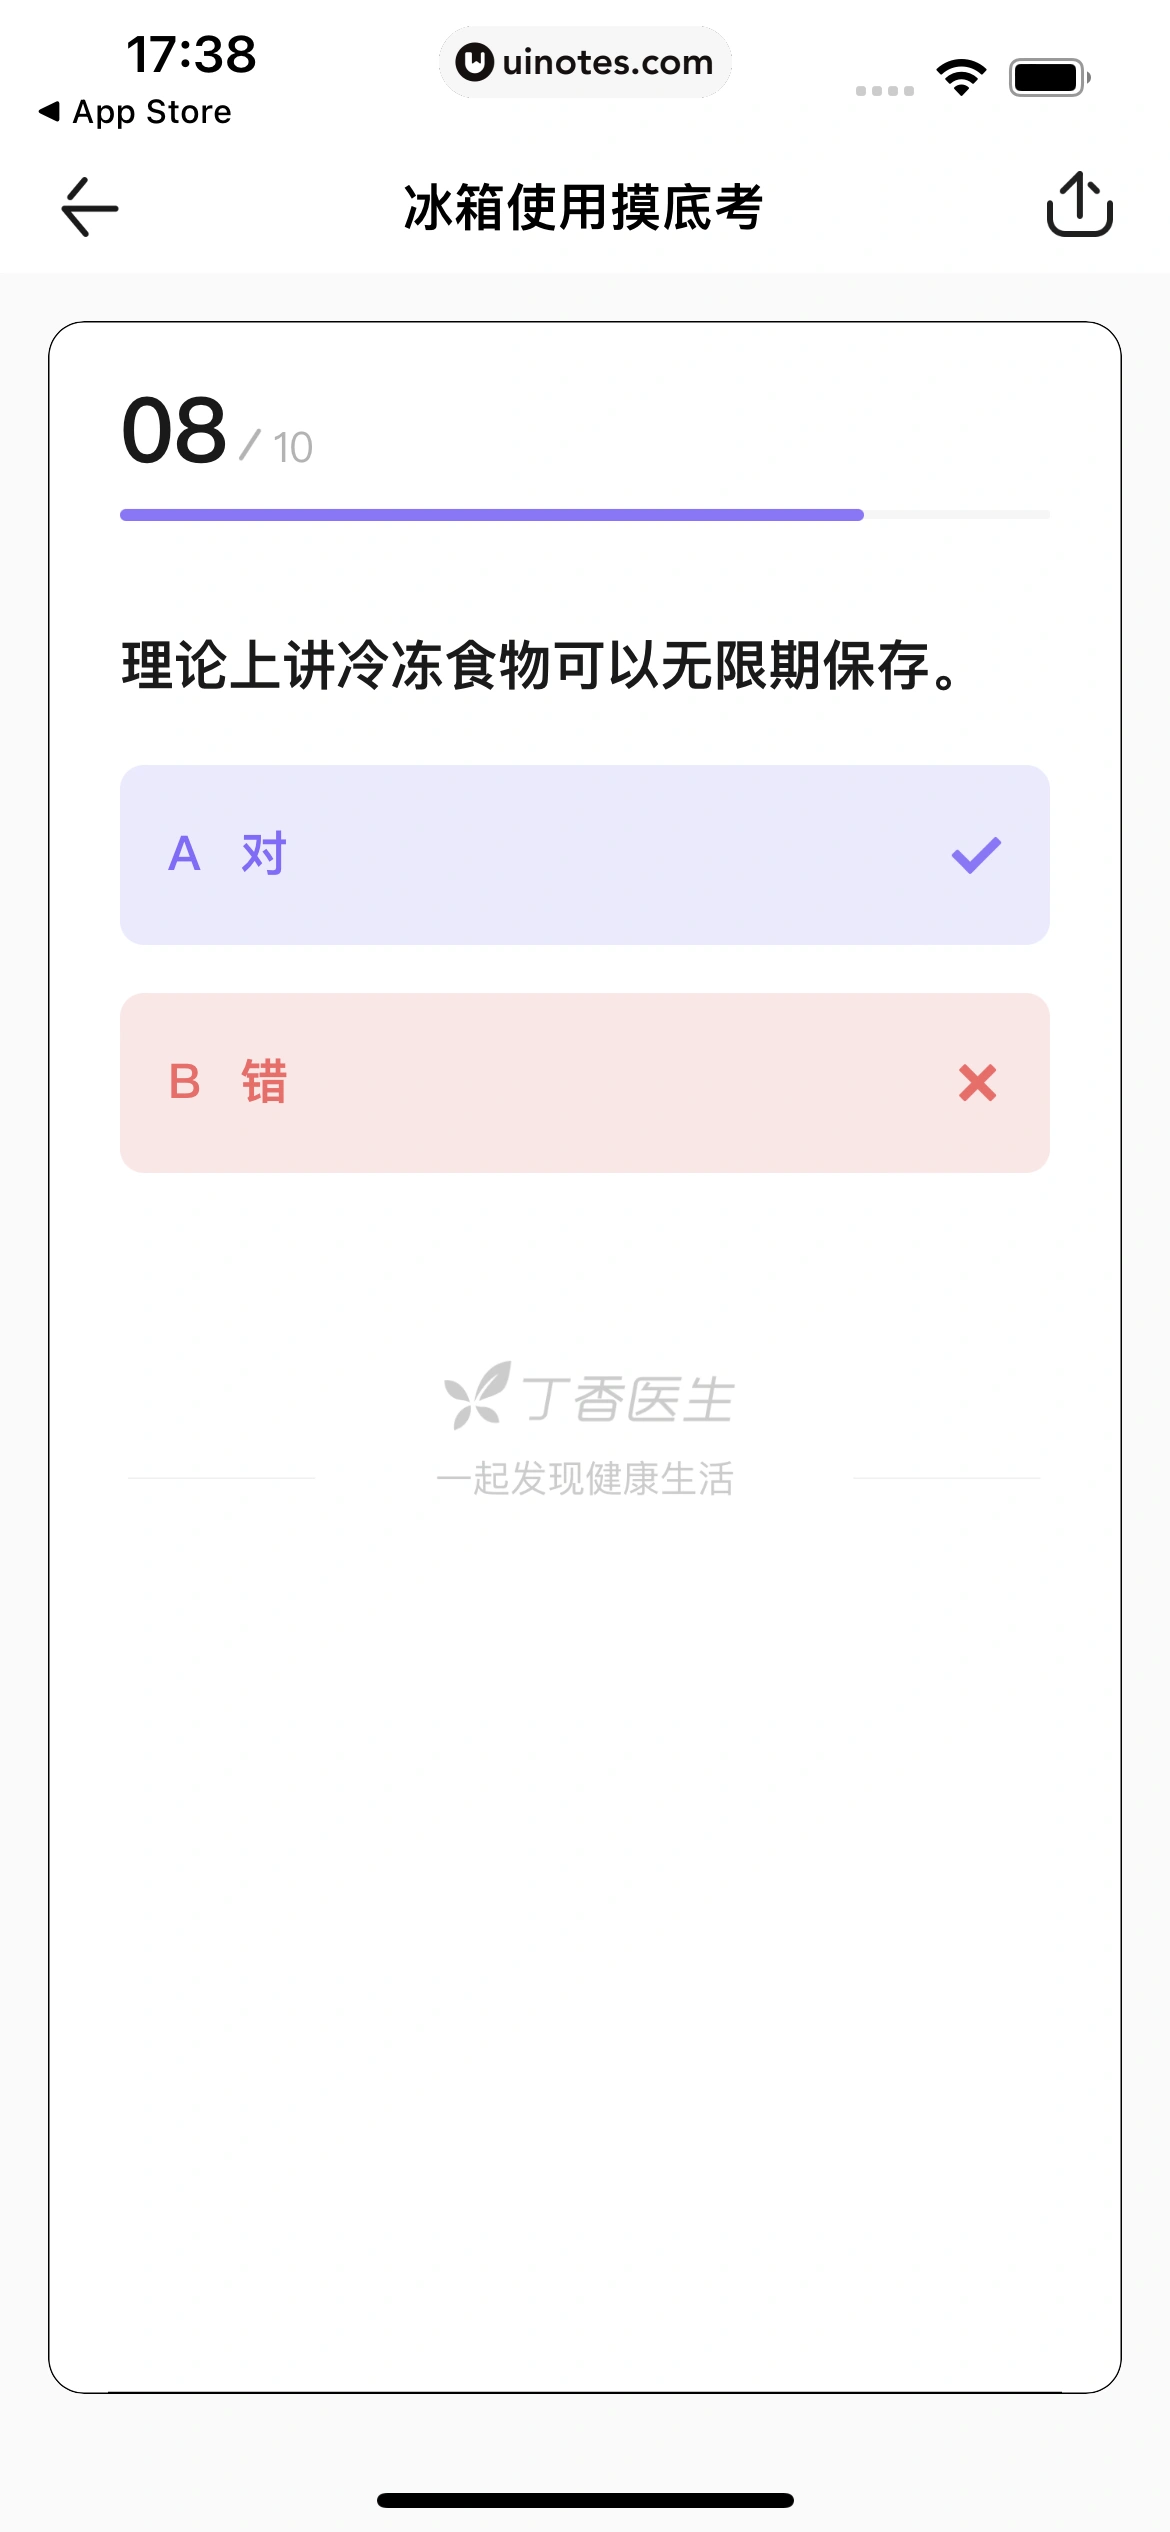 丁香医生 App 截图 082 - UI Notes